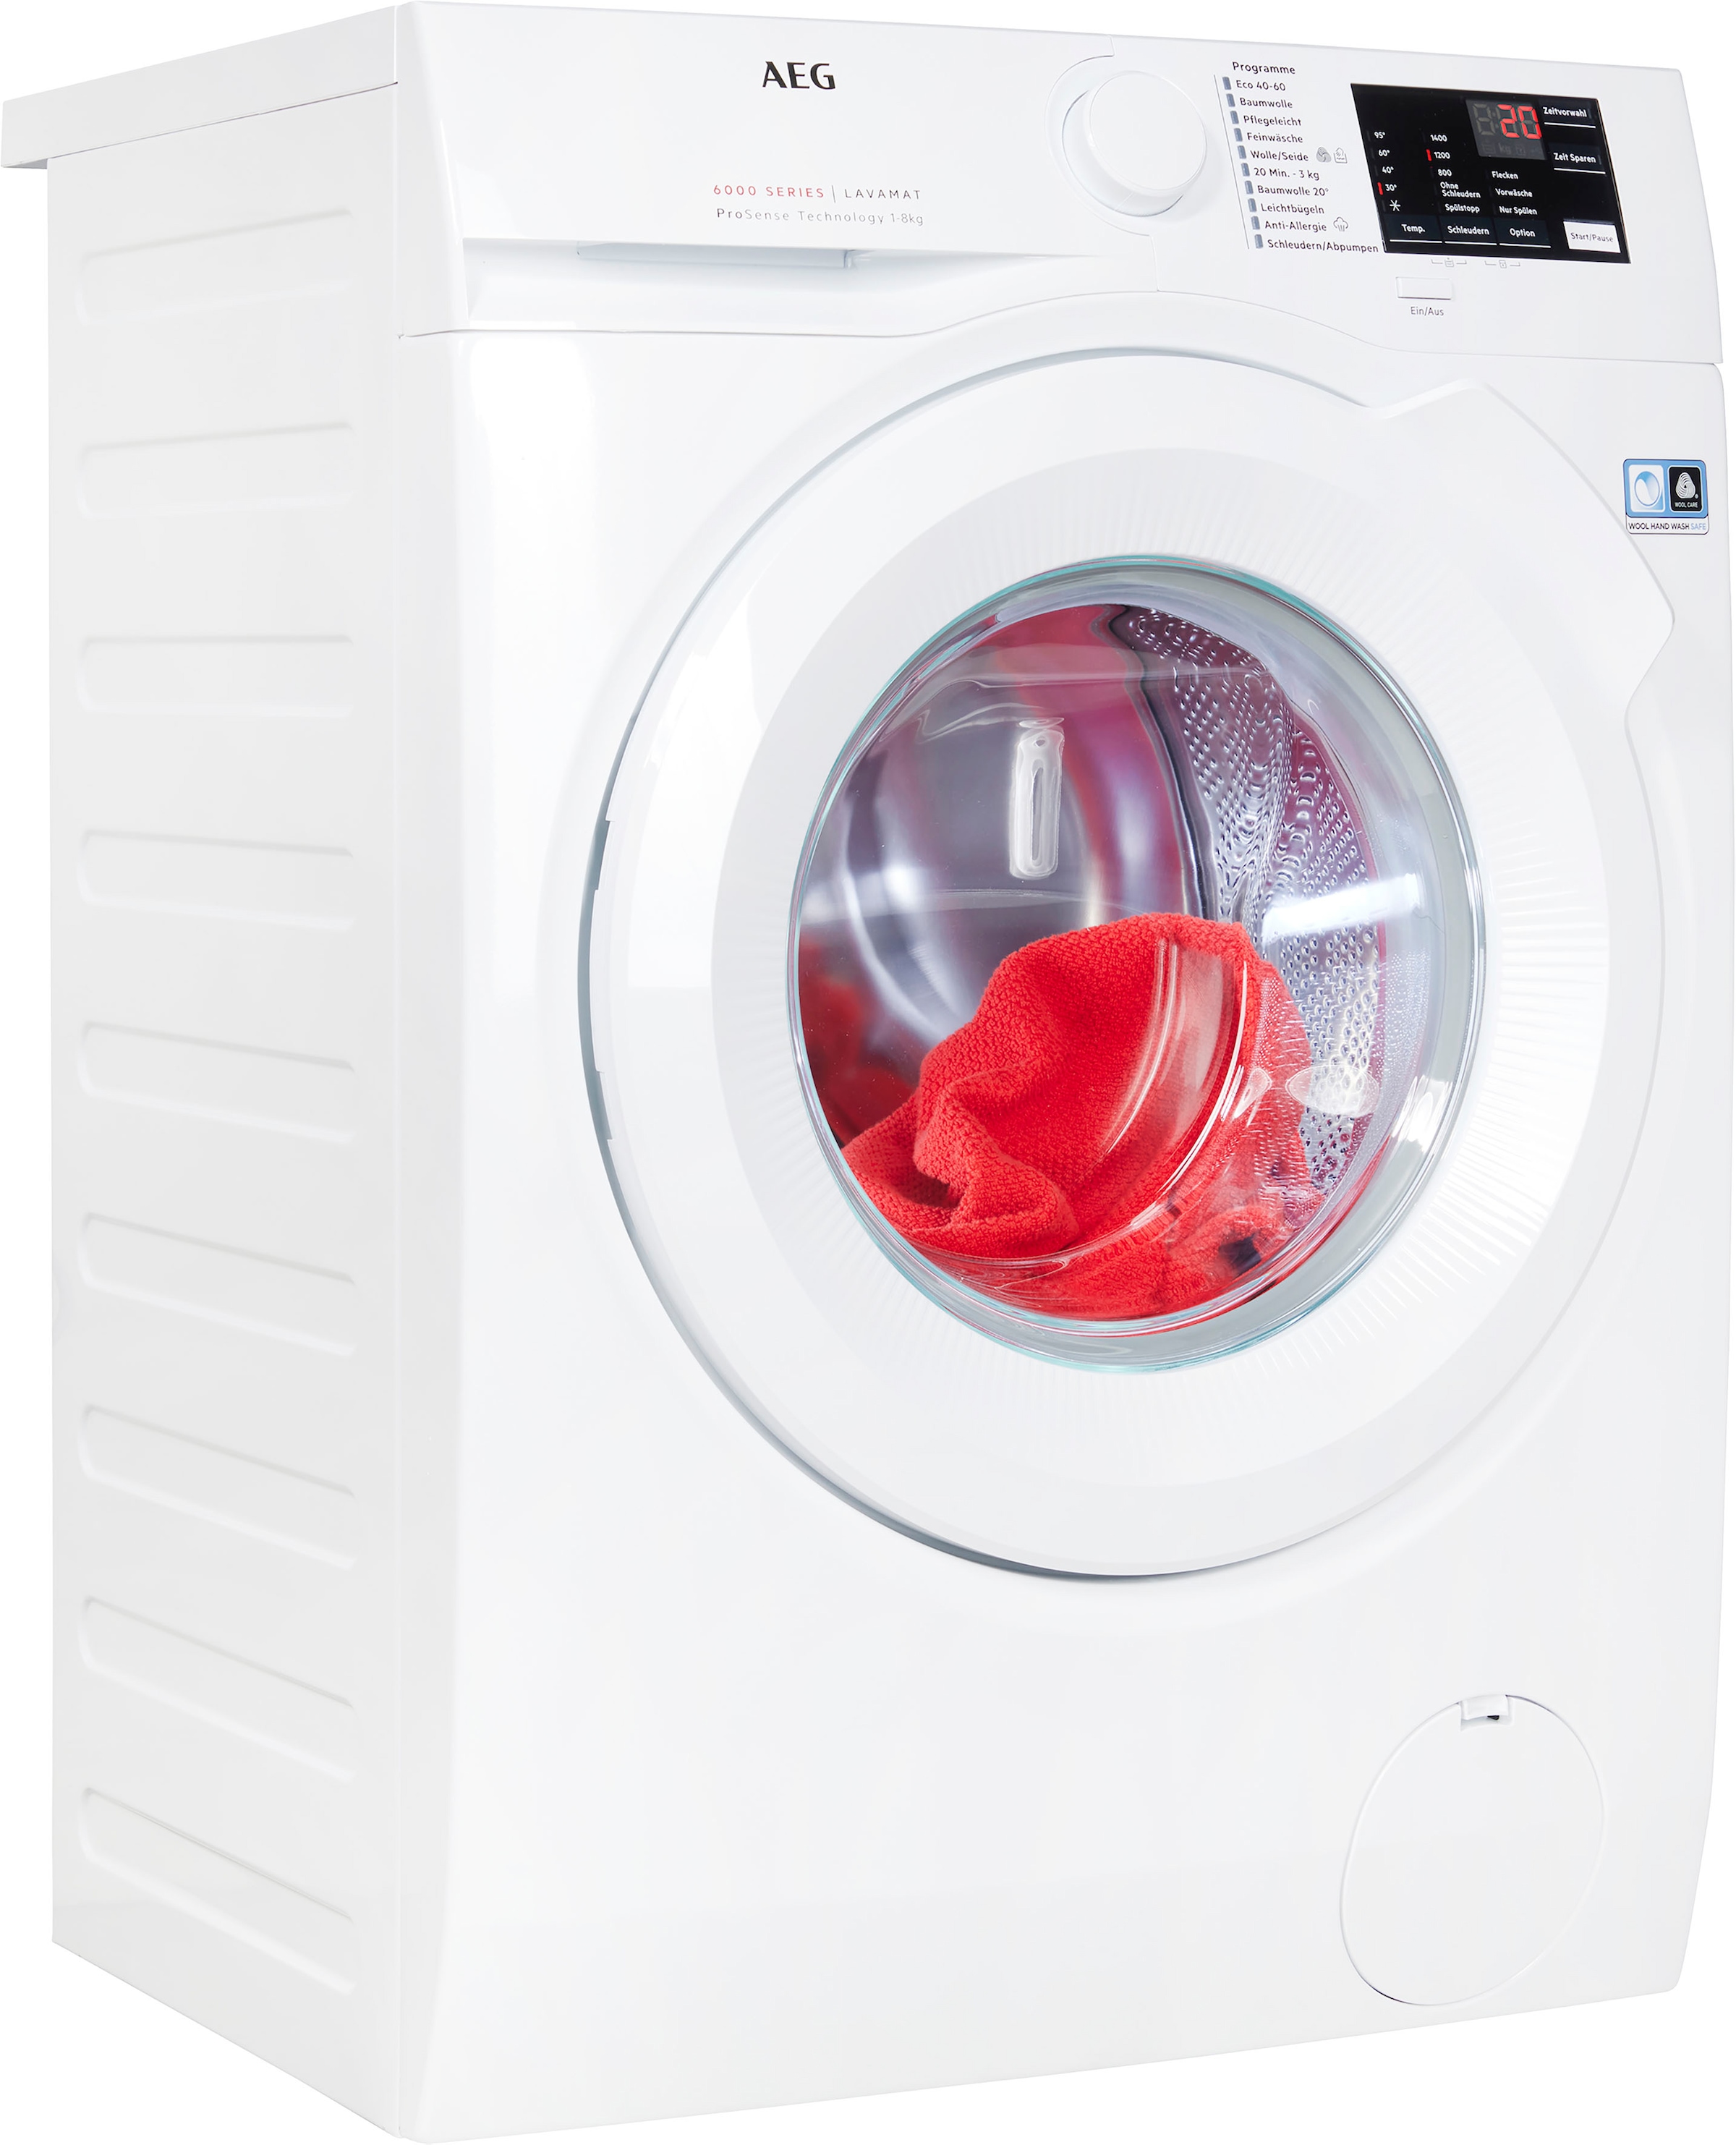 AEG Waschmaschine, Serie 6000, L6FB480FL, 8 kg, 1400 U/min, Hygiene-/ Anti-Allergie Programm mit Dampf